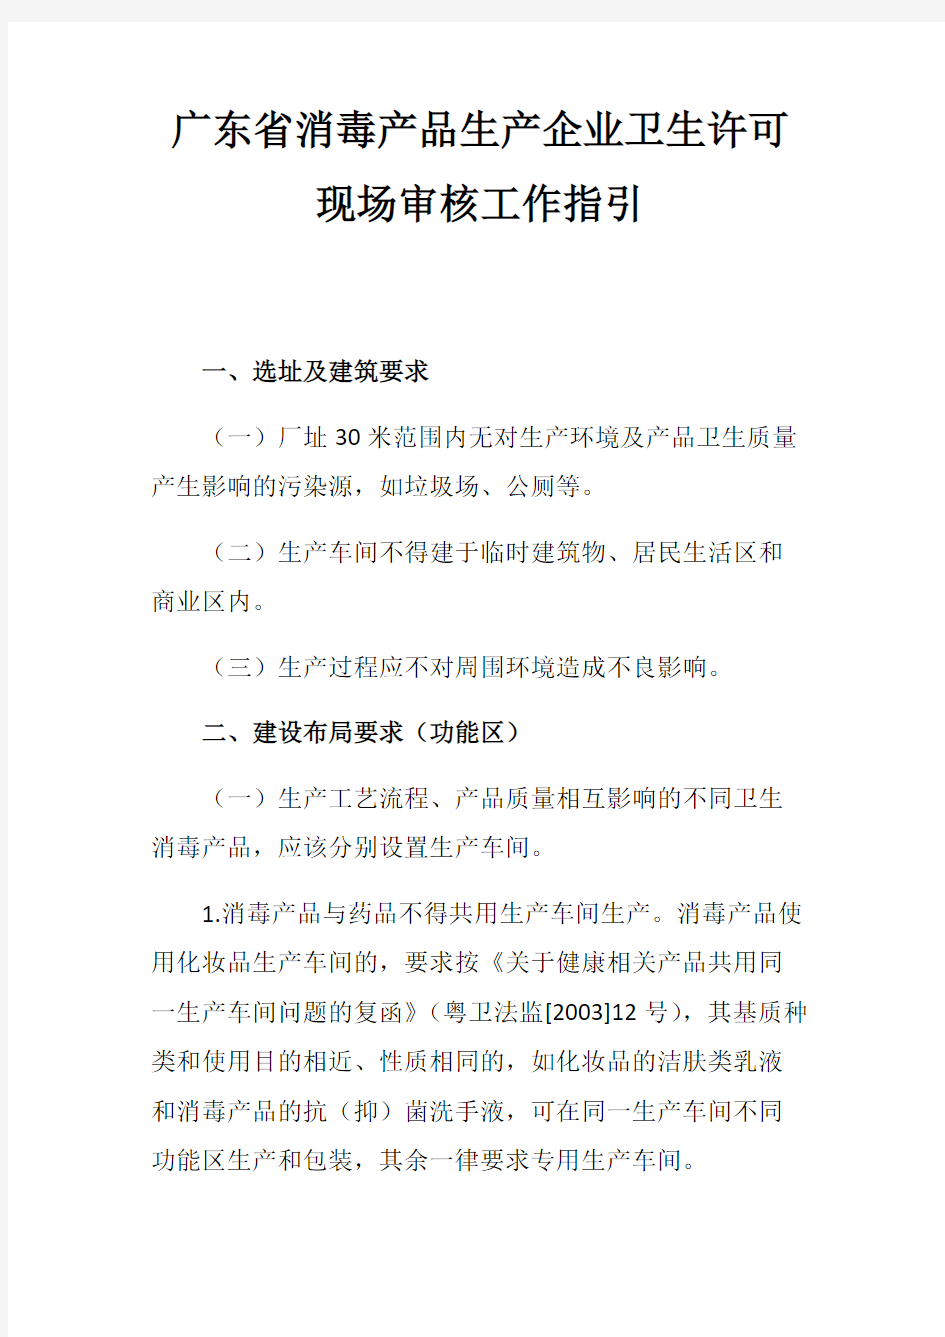 广东省消毒产品生产企业卫生许可现场审核工作指引